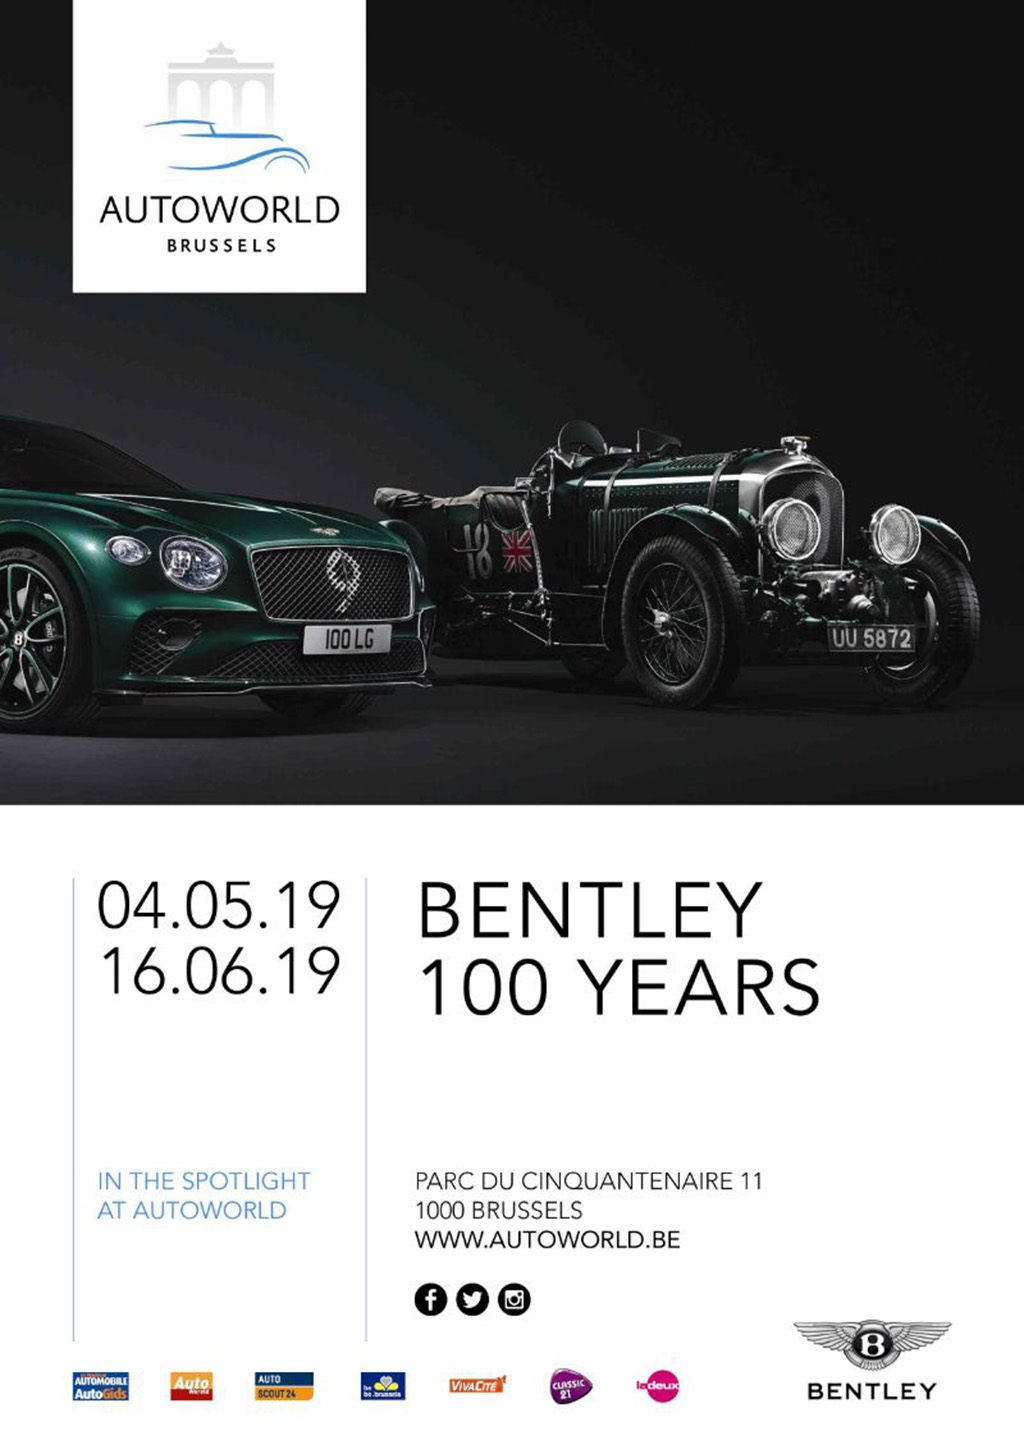 Bentley Autoworld Brussels